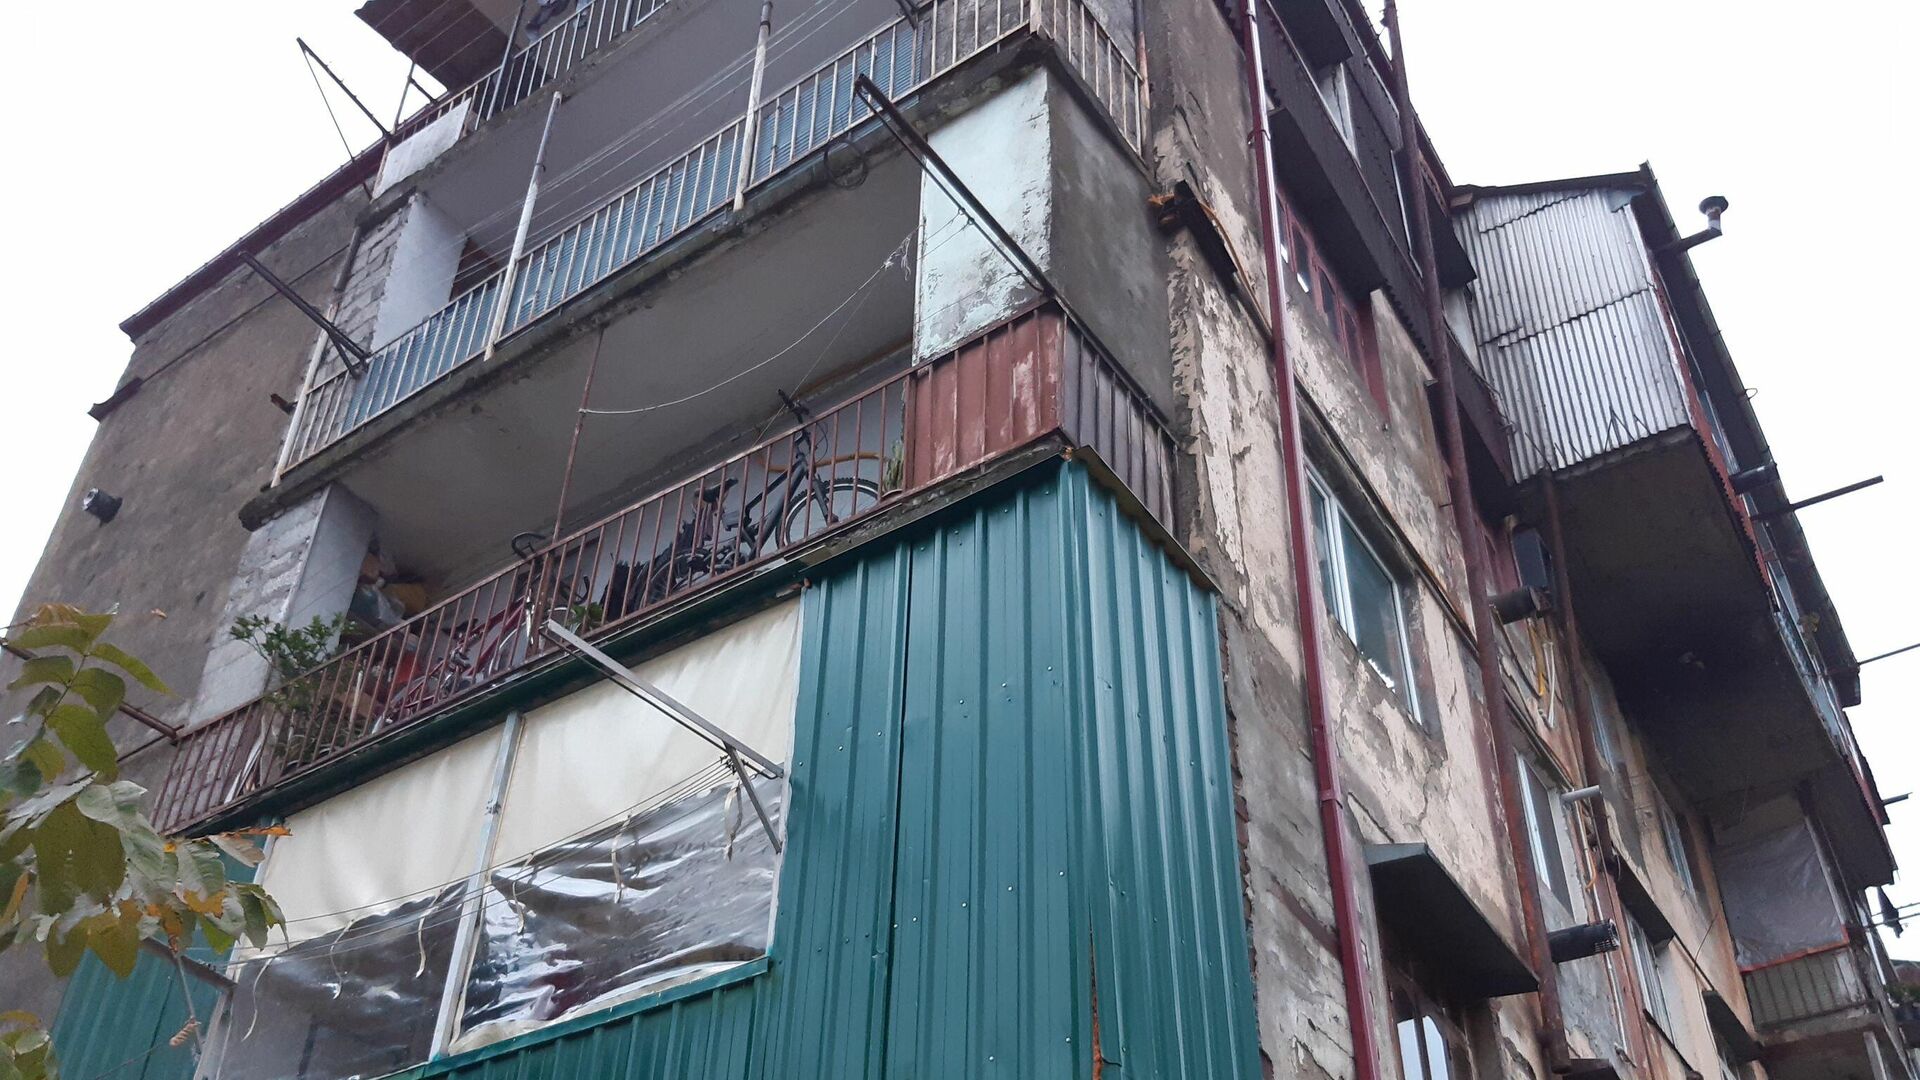 Аварийный пятиэтажный дом с пристройками в Батуми близ рынка Хопа - Sputnik Грузия, 1920, 25.12.2021